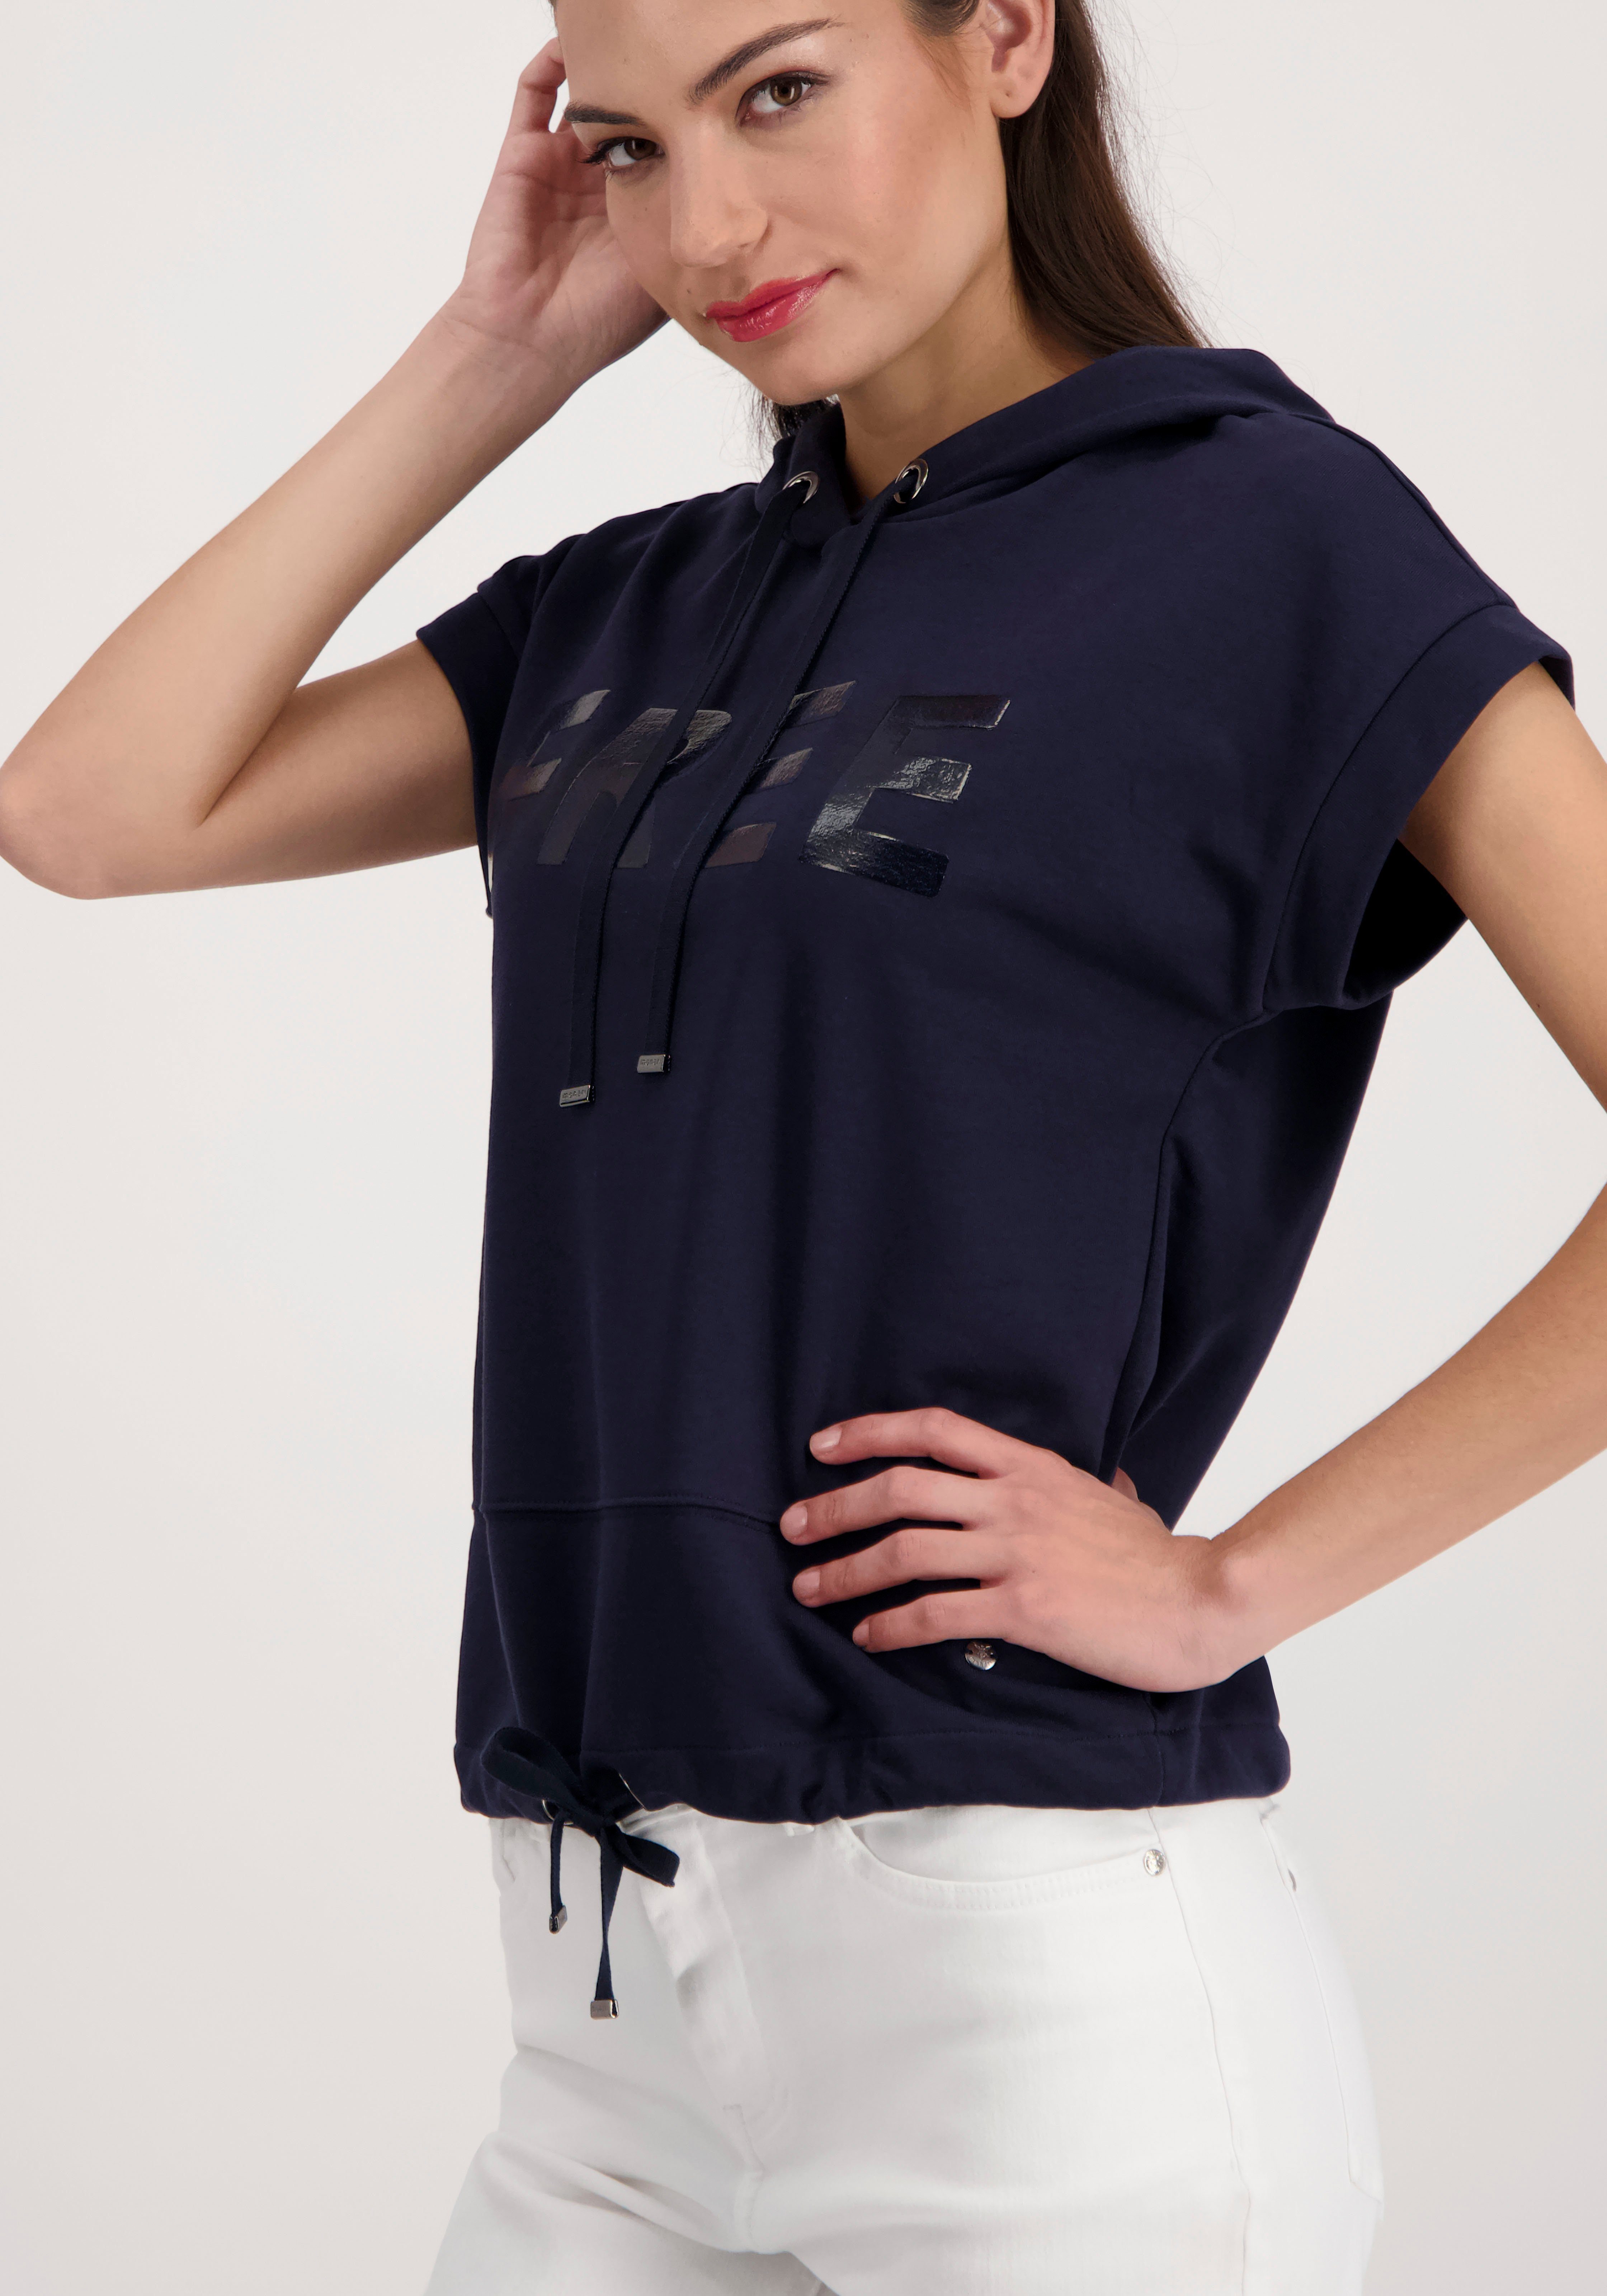 Monari Sweatshirt mit Kapuze online kaufen | OTTO